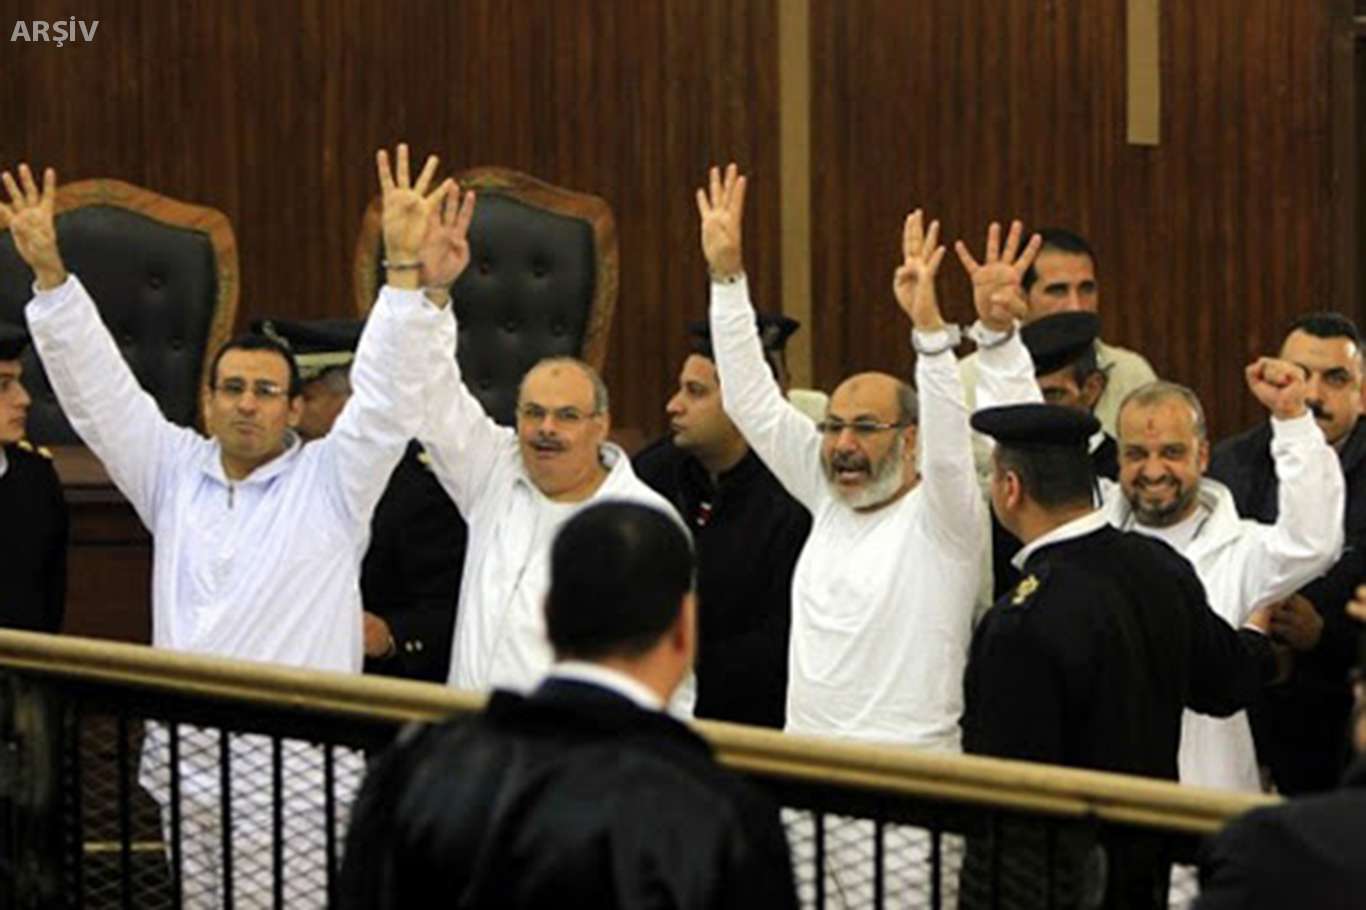 İhvan-ı Müslimin liderlerinin de aralarında bulunduğu 12 kişi hakkındaki idam cezası onandı